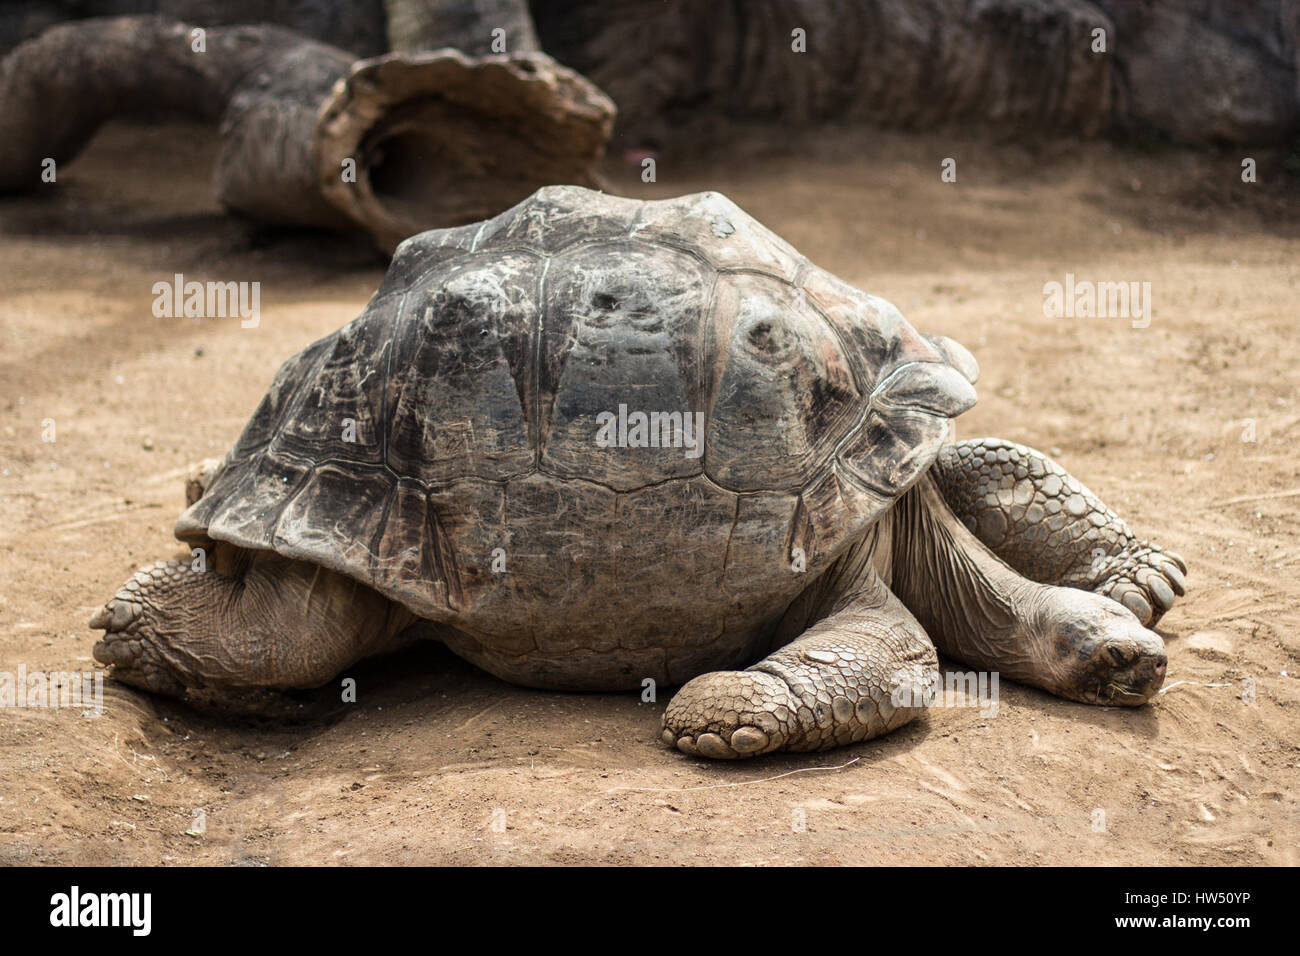 sehr alte und große Schildkröte - Galapagos Schildkröte Stockfoto